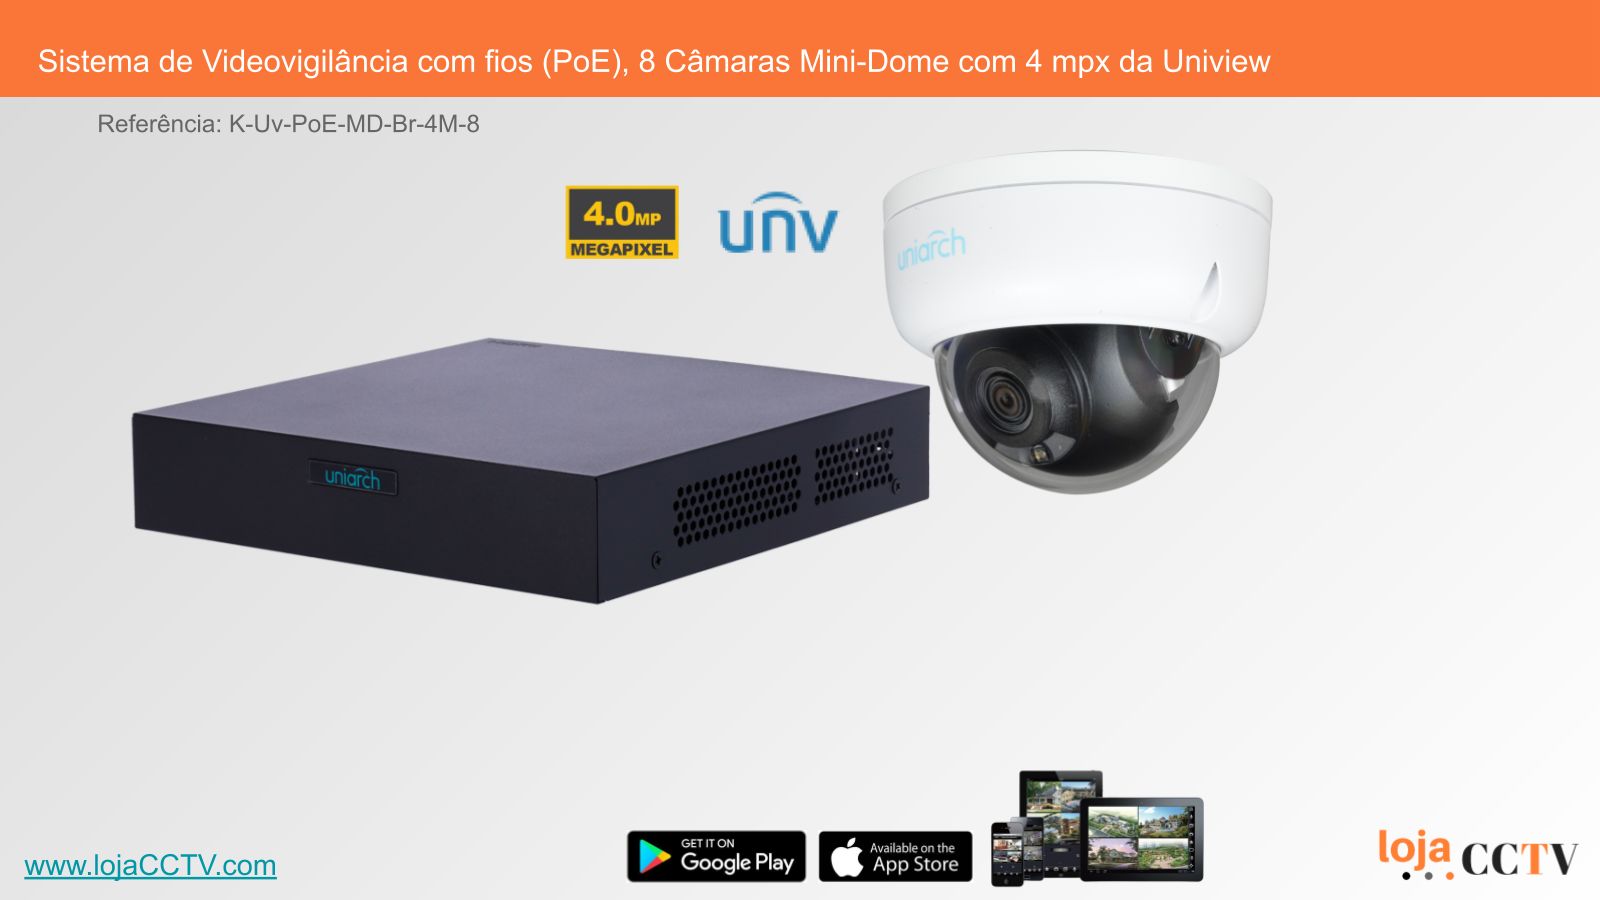 Videovigilância com fios (PoE) 8 Câmaras Mini-Dome 4 mpx, Uniview